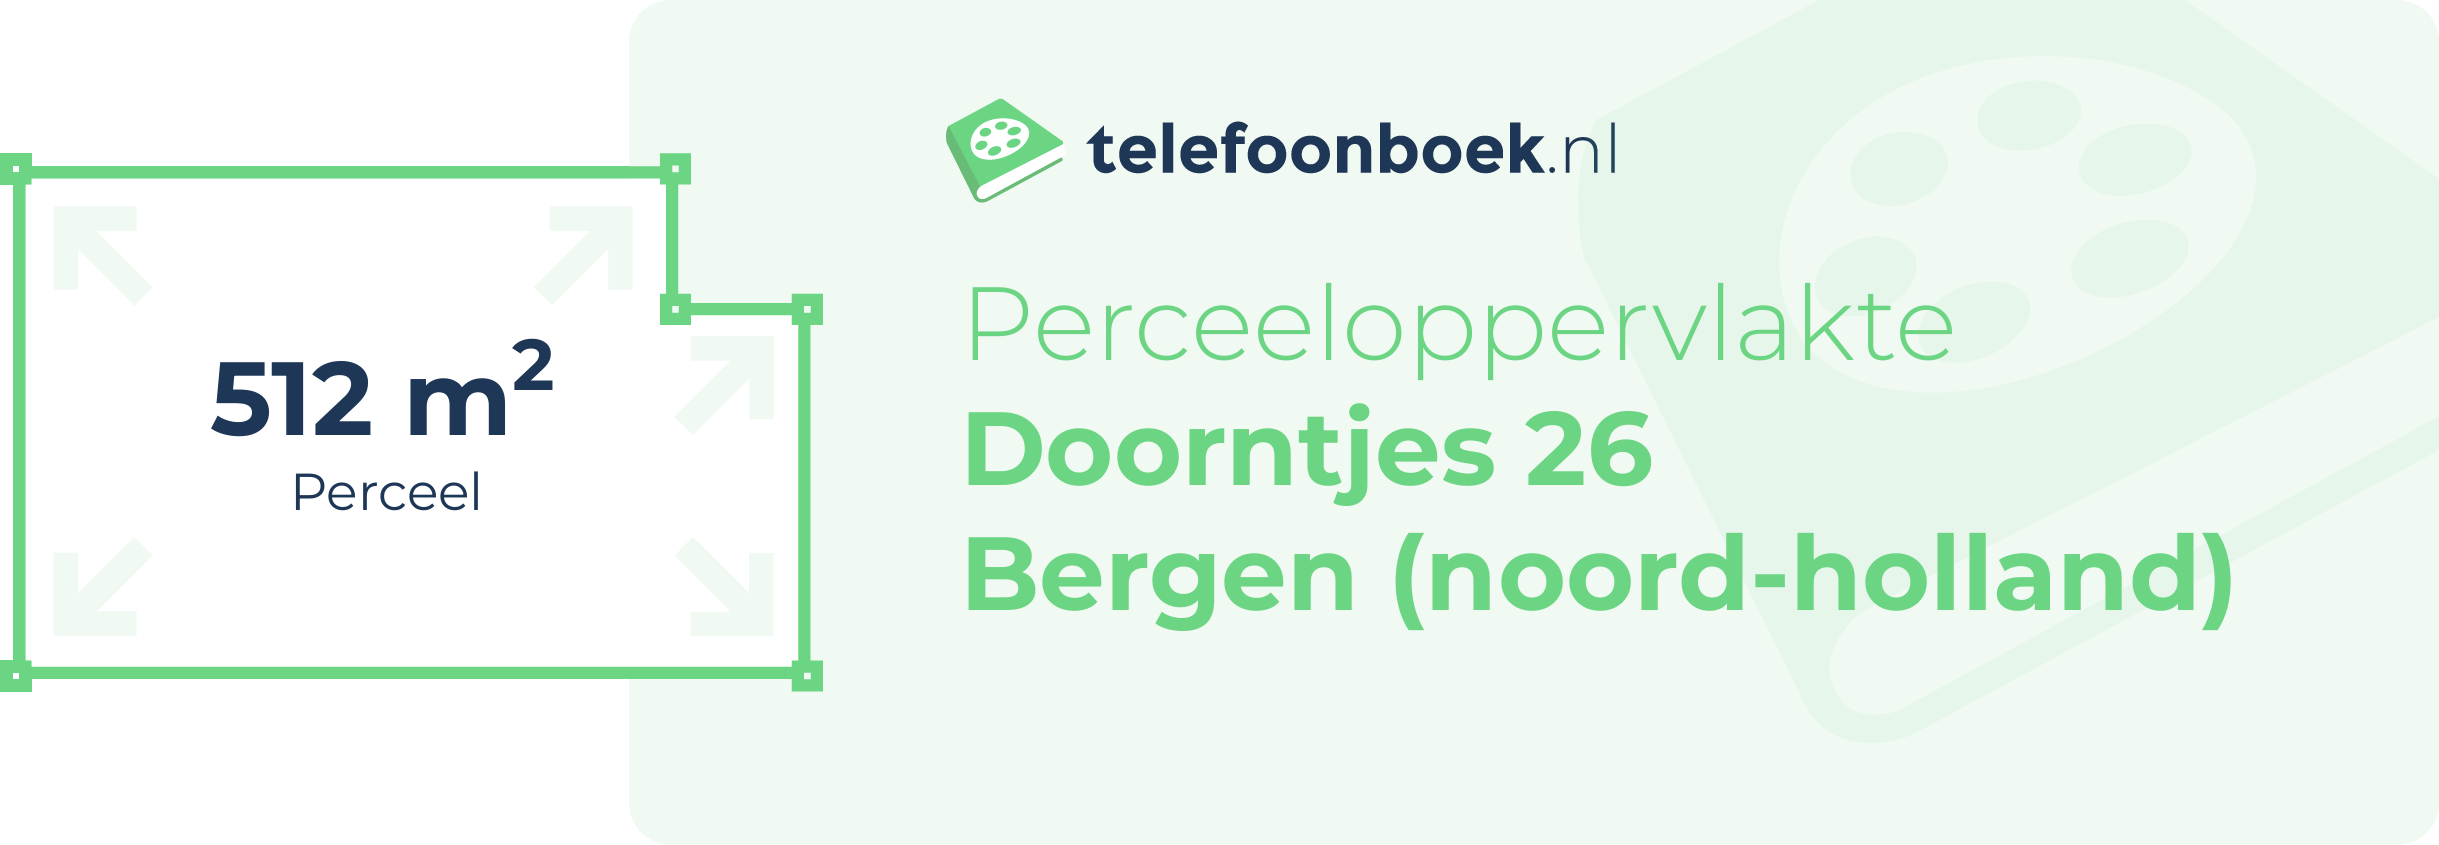 Perceeloppervlakte Doorntjes 26 Bergen (Noord-Holland)